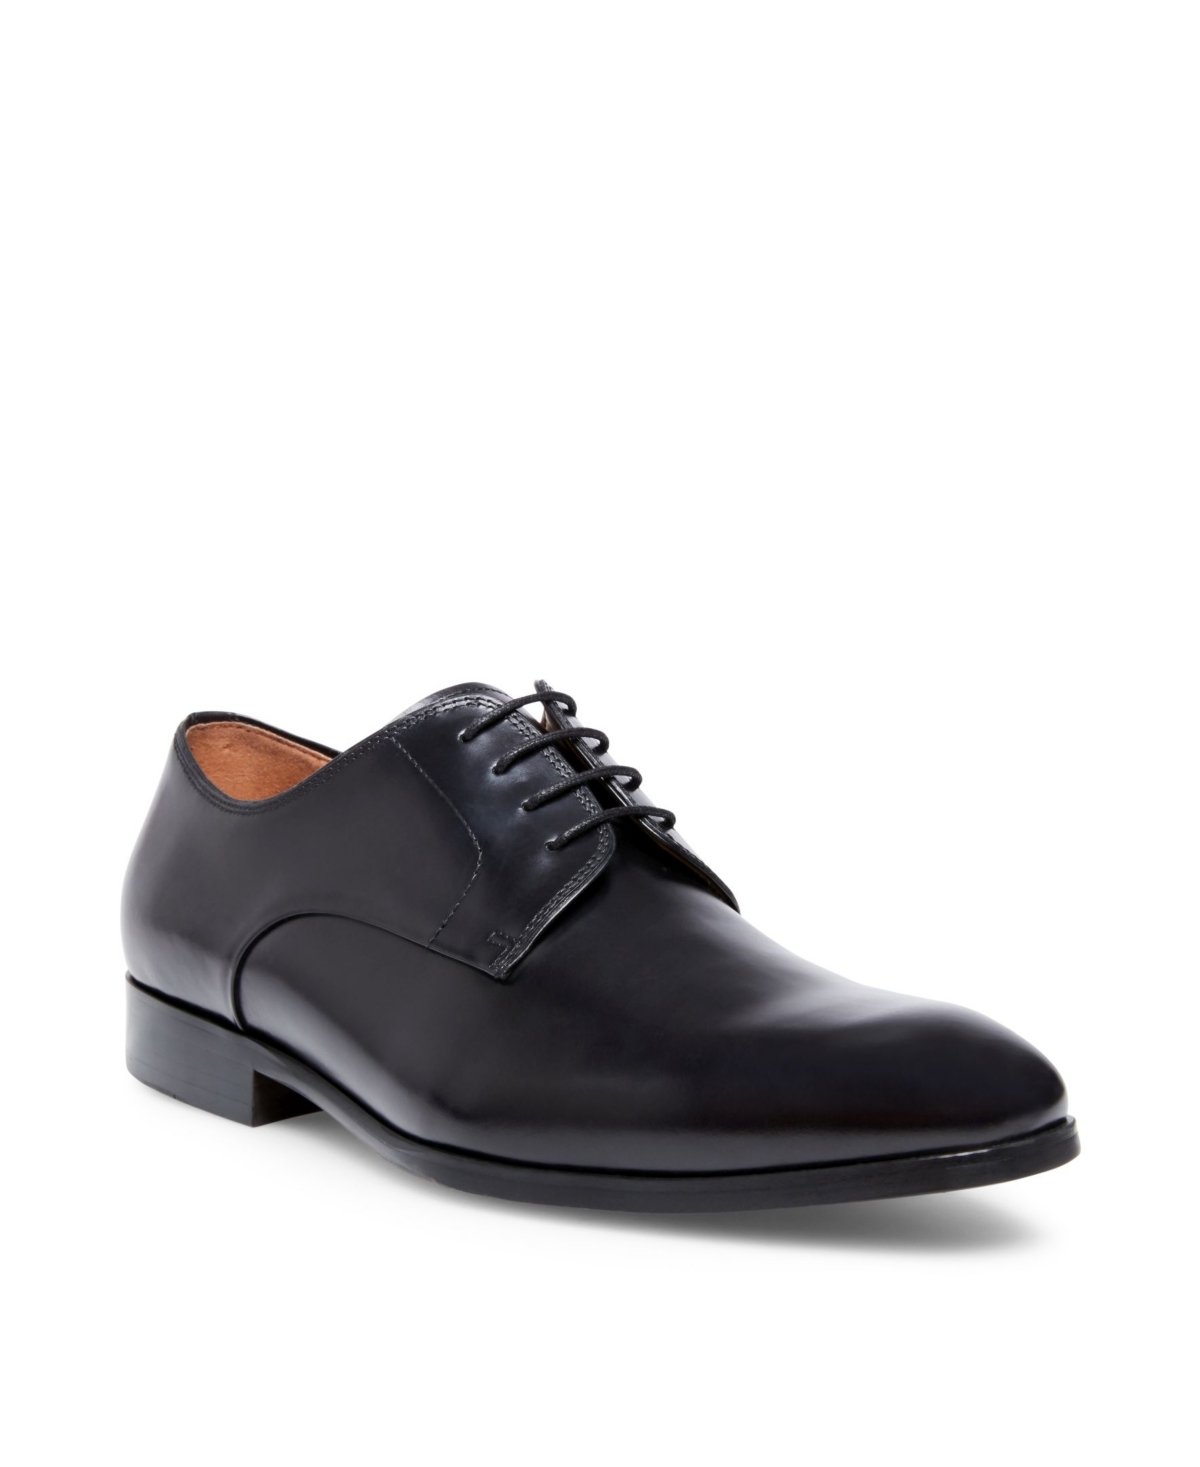 Men's Parsens Oxford Shoes - Tan Leather